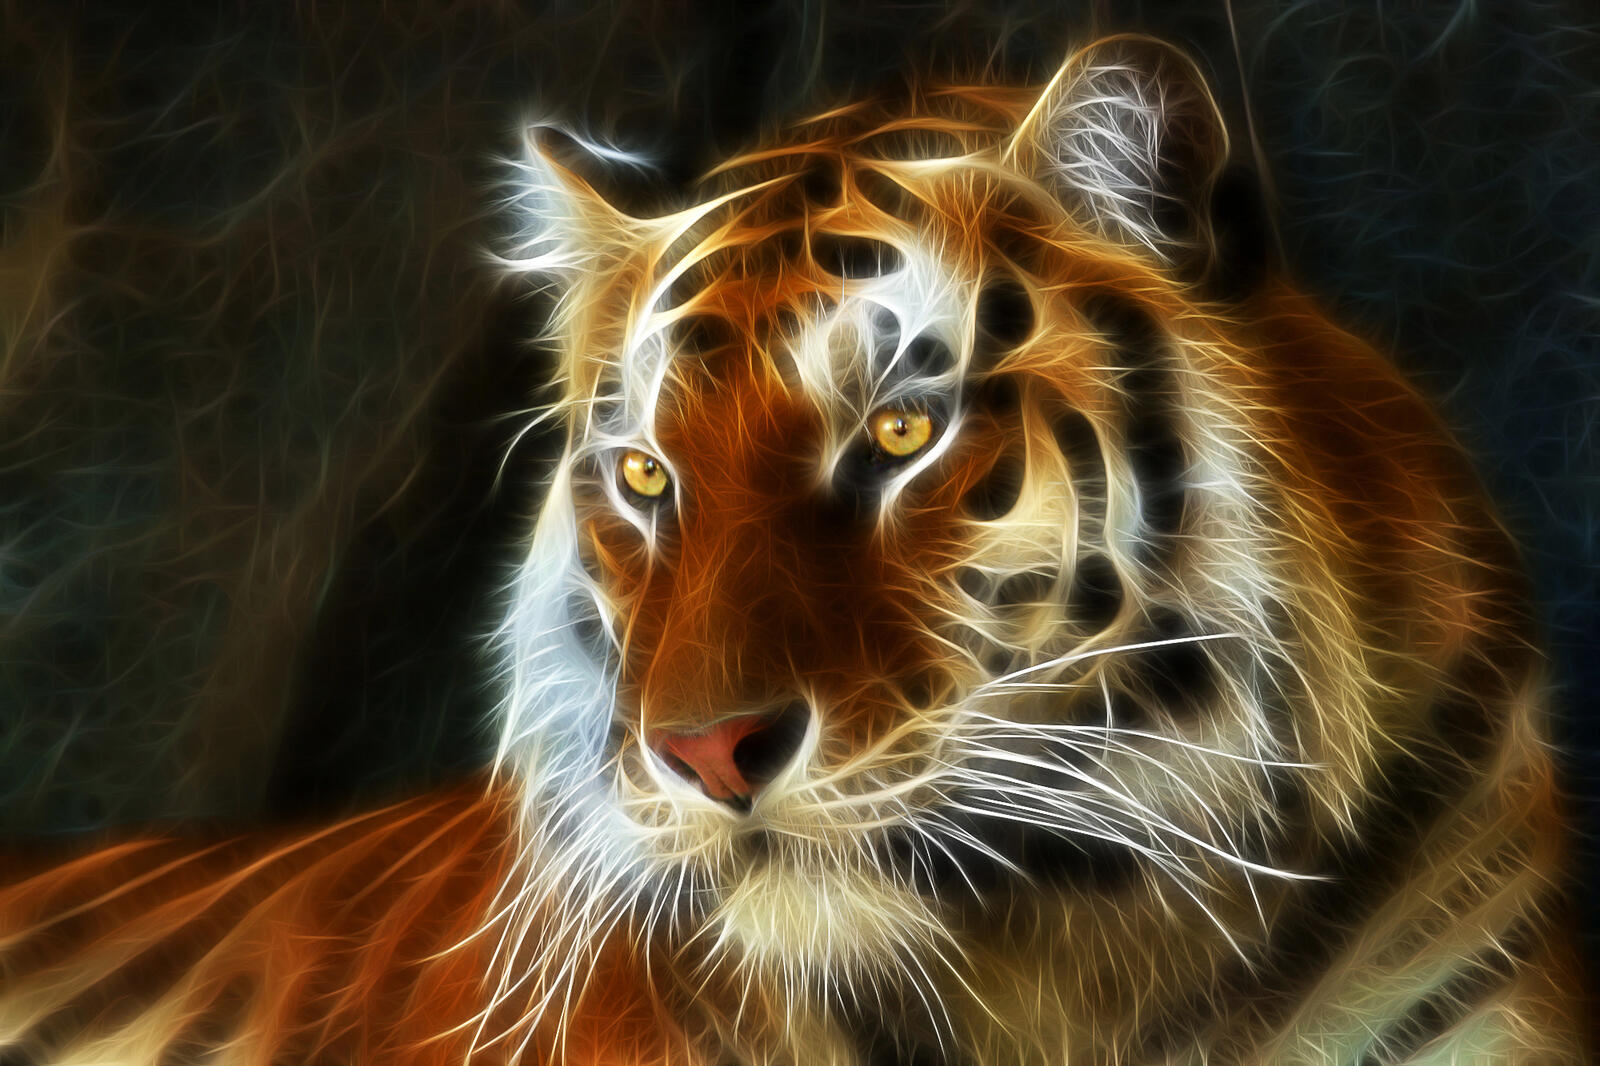 Wallpapers art fractal tiger on the desktop